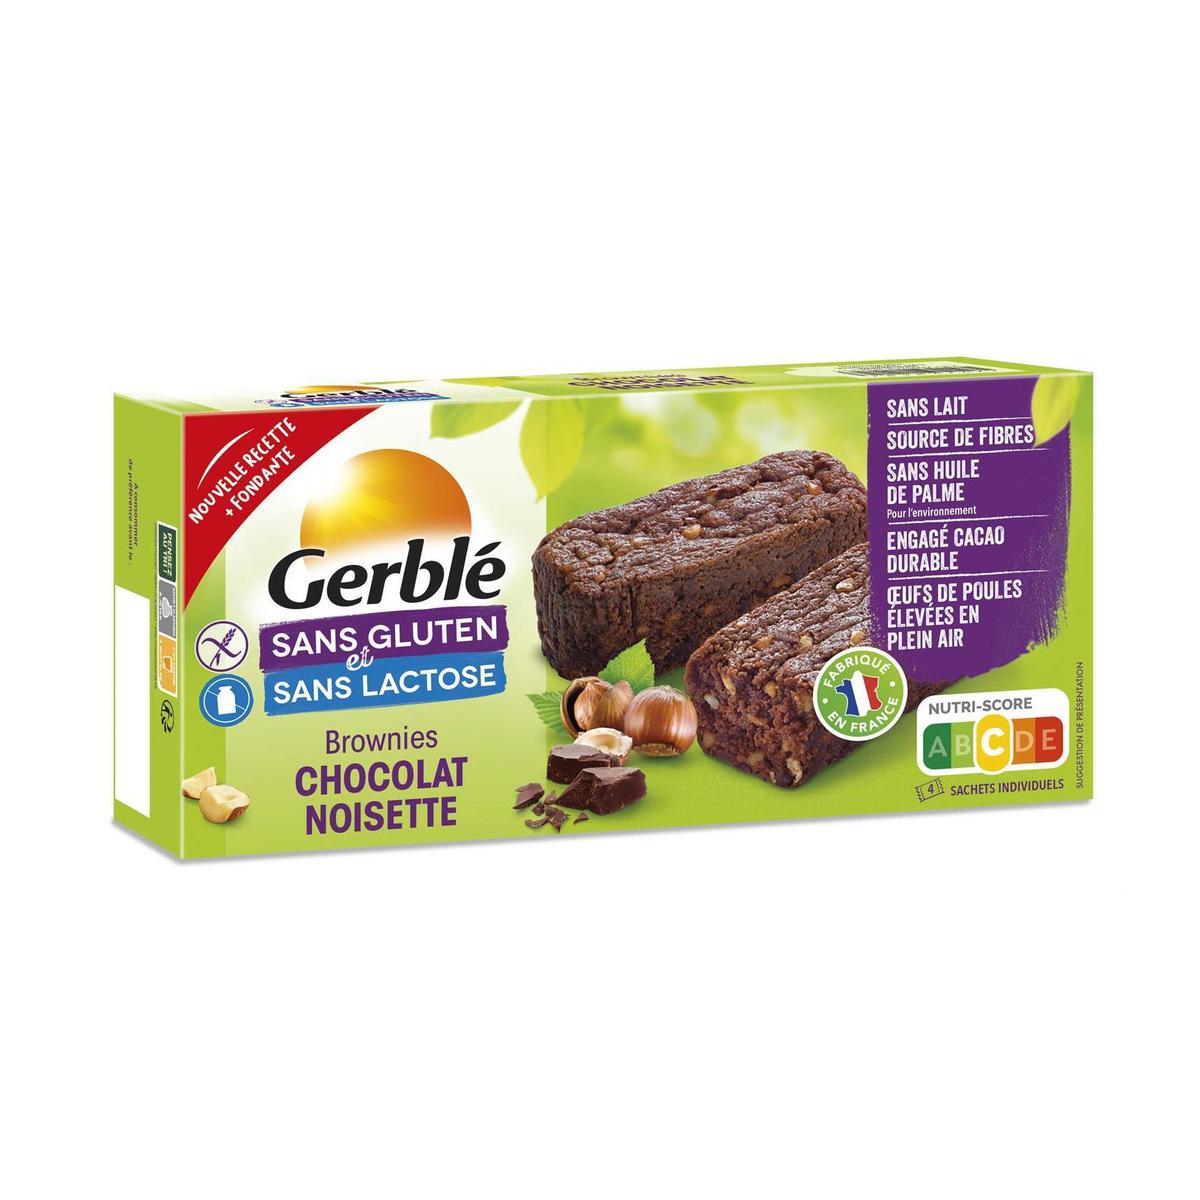 GERBLE Gerblé sans gluten palets aux pépites de chocolats 160g